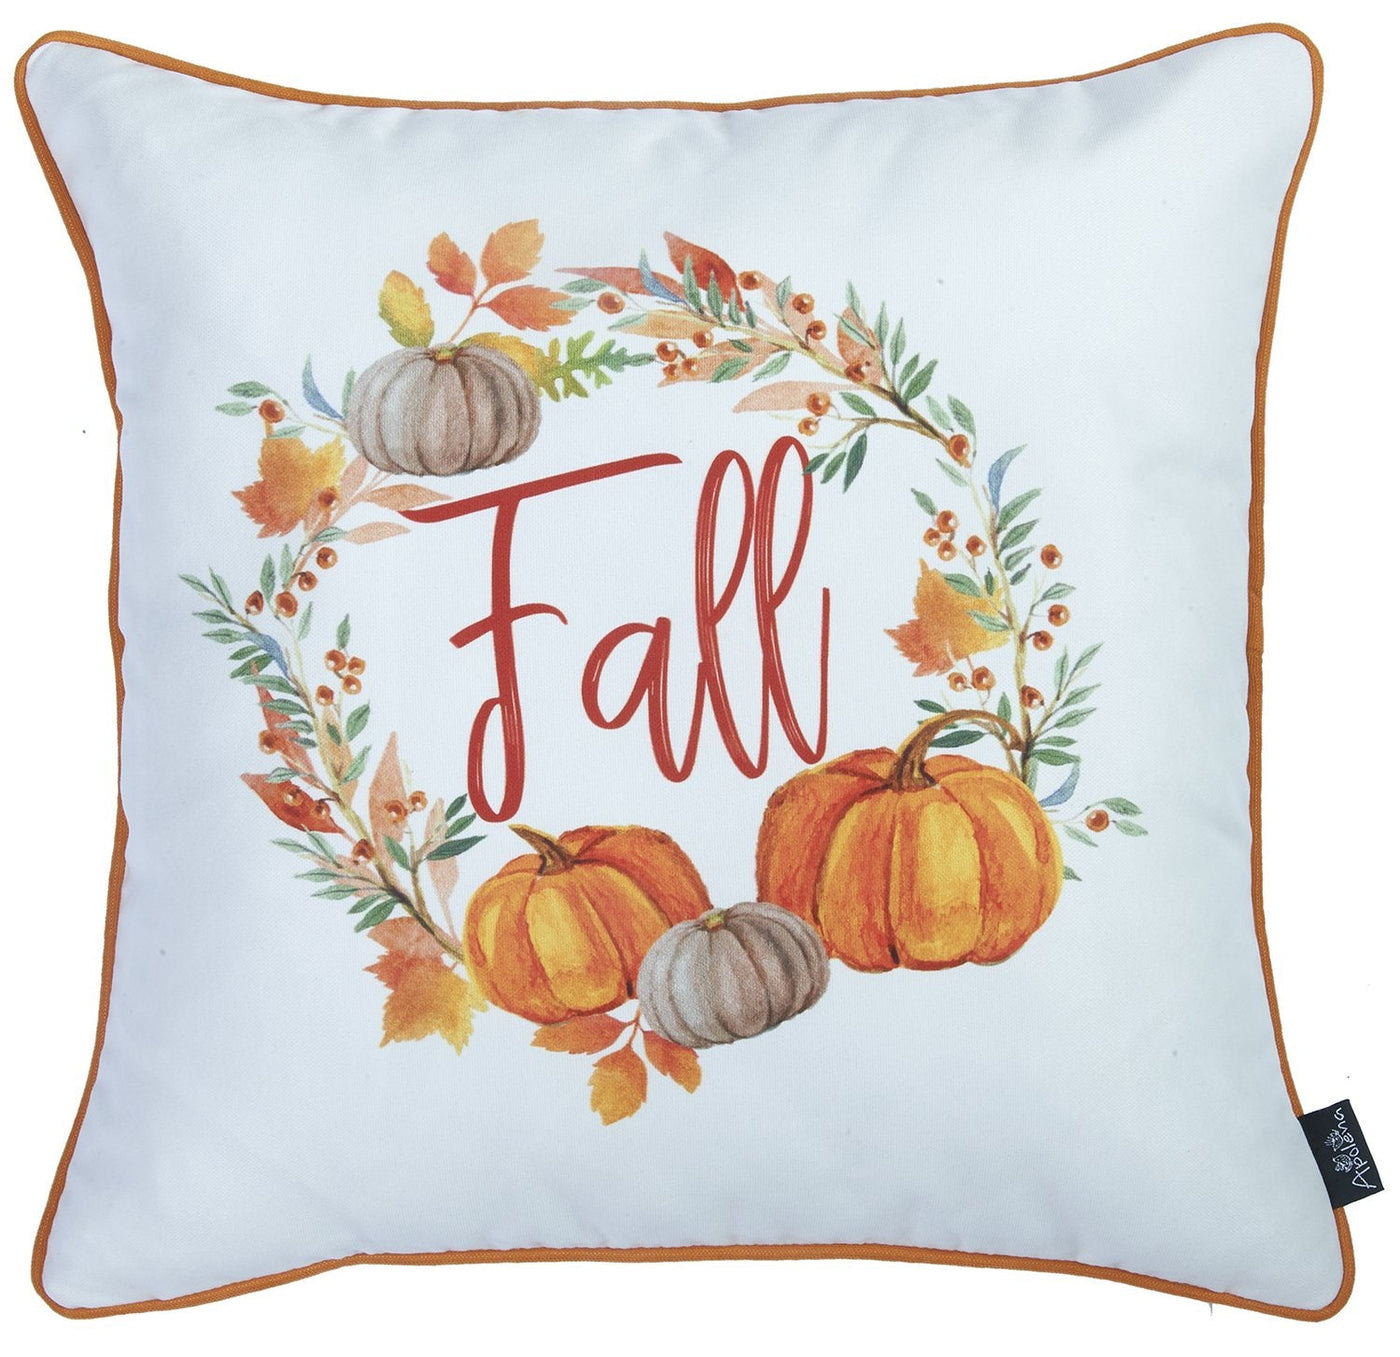 Set Of 2 18’ Fall Thanksgiving Pumpkin Throw Pillow Cover - Accent Throw Pillows